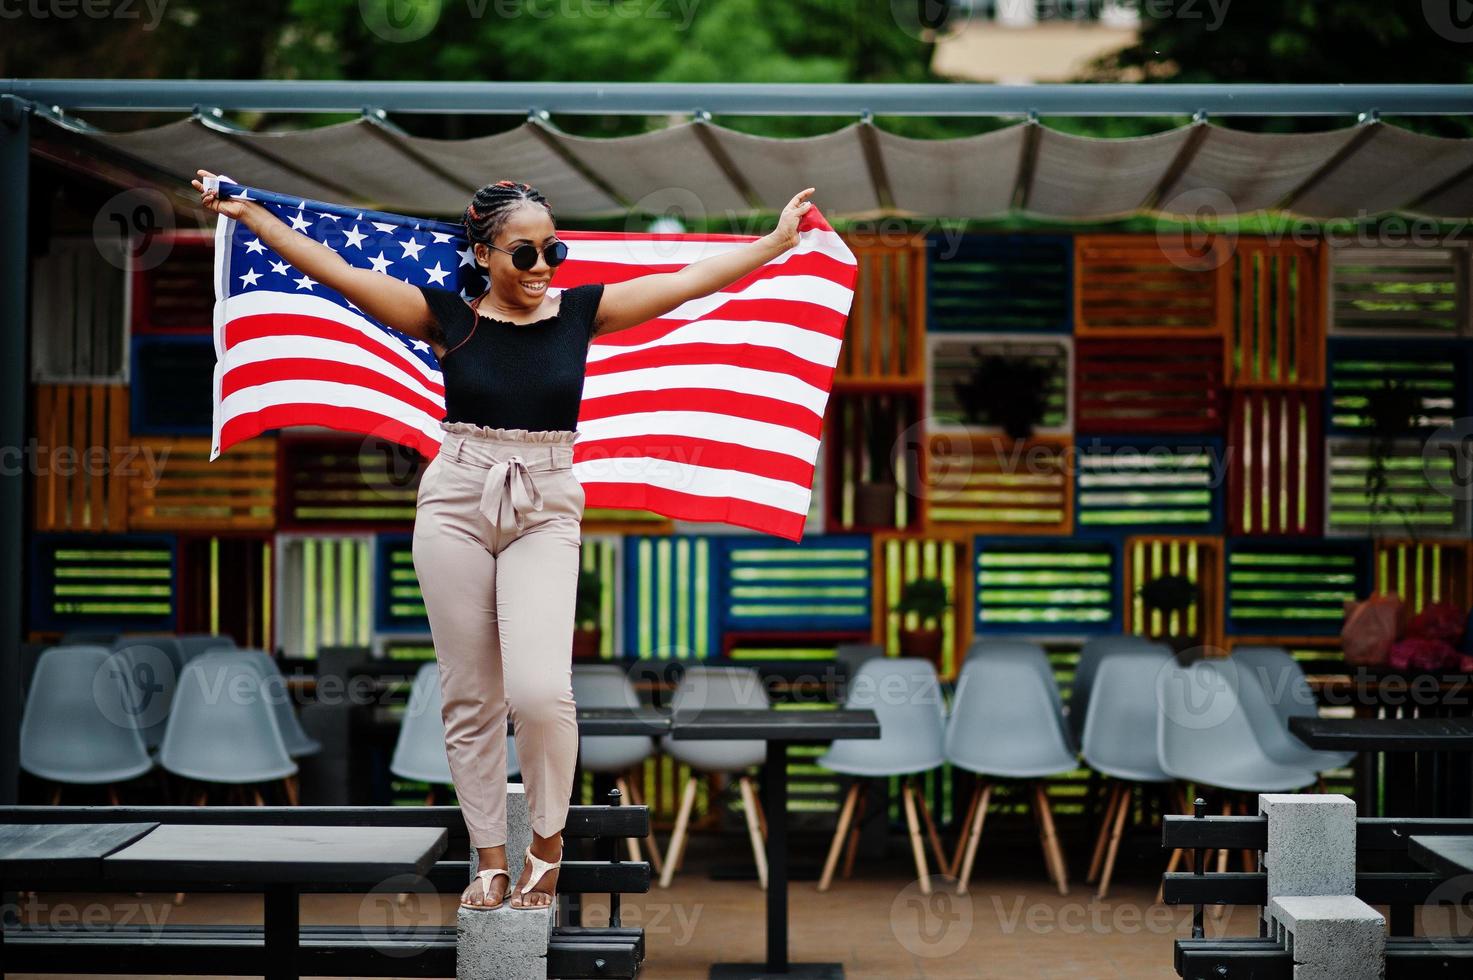 stijlvolle Afro-Amerikaanse vrouw in zonnebril poseerde buiten met usa vlag. foto